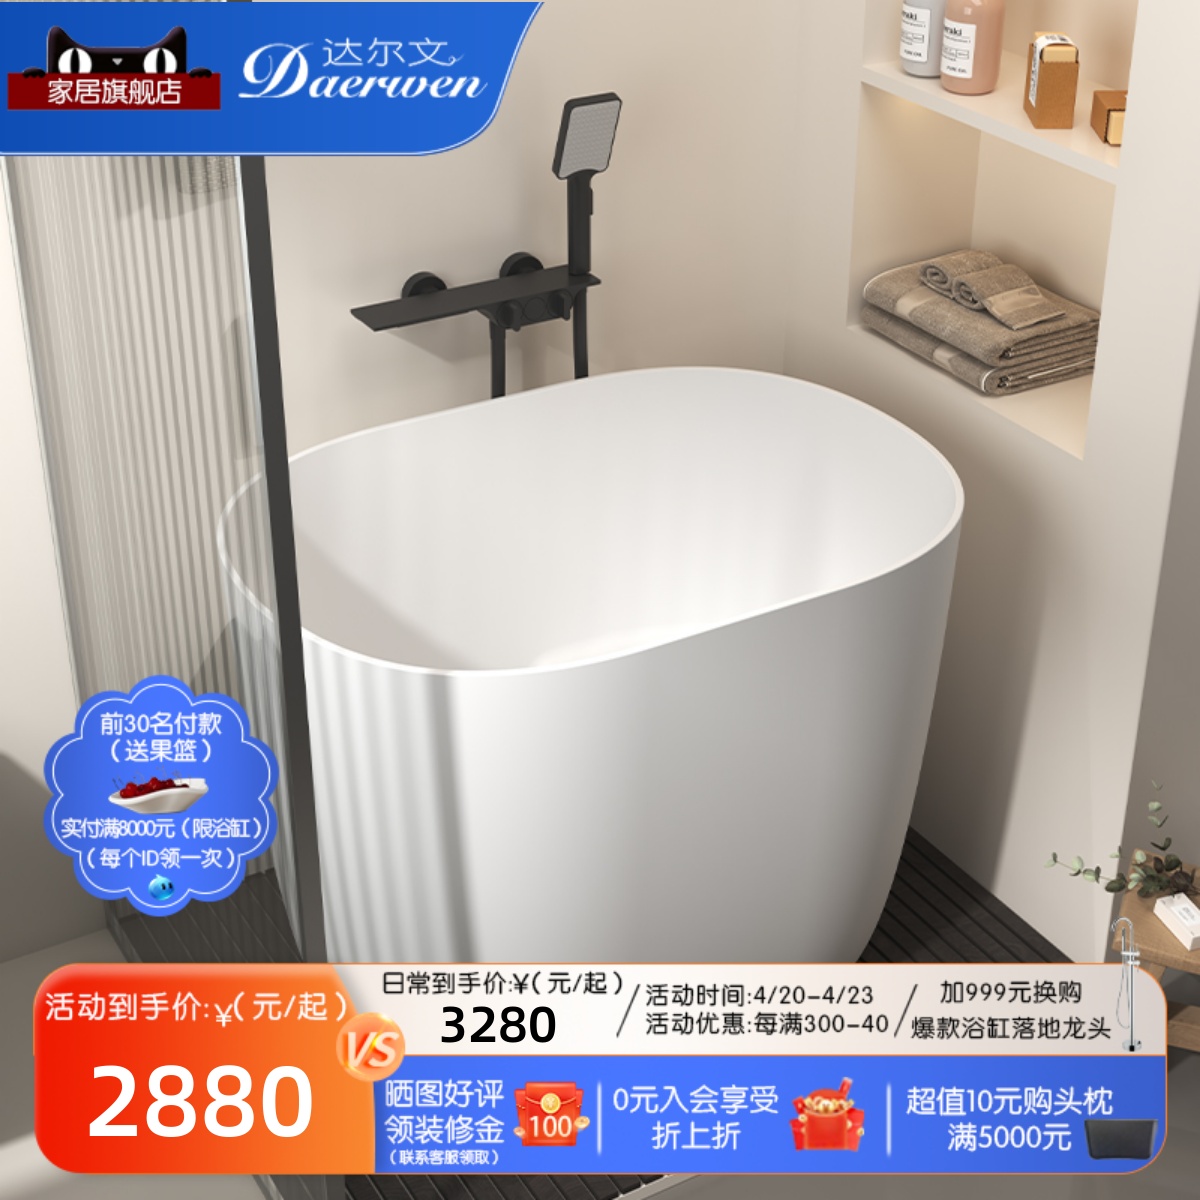 达尔文深泡式PMMA人造石浴缸小户型家用坐式独立式迷你小浴缸浴盆